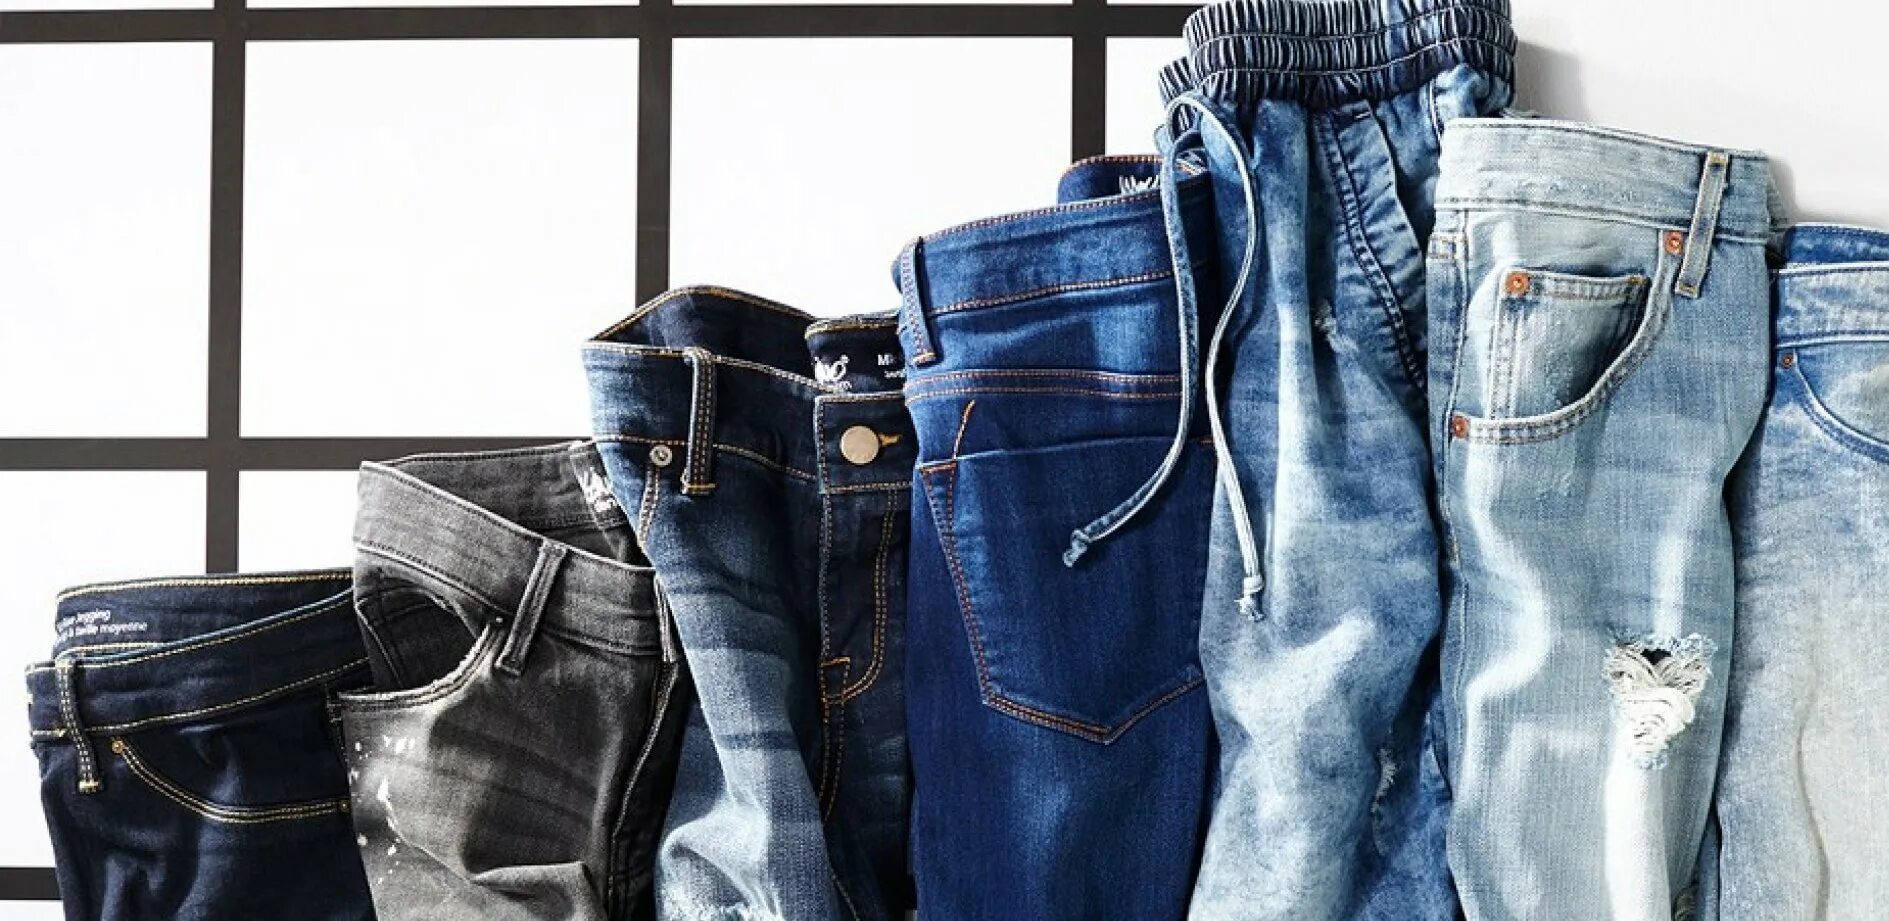 Есть новые джинс. Lagarto Denim джинсы. Джинсы MAXQ Denim. Стопка джинсов. Джинсы мужские и женские.